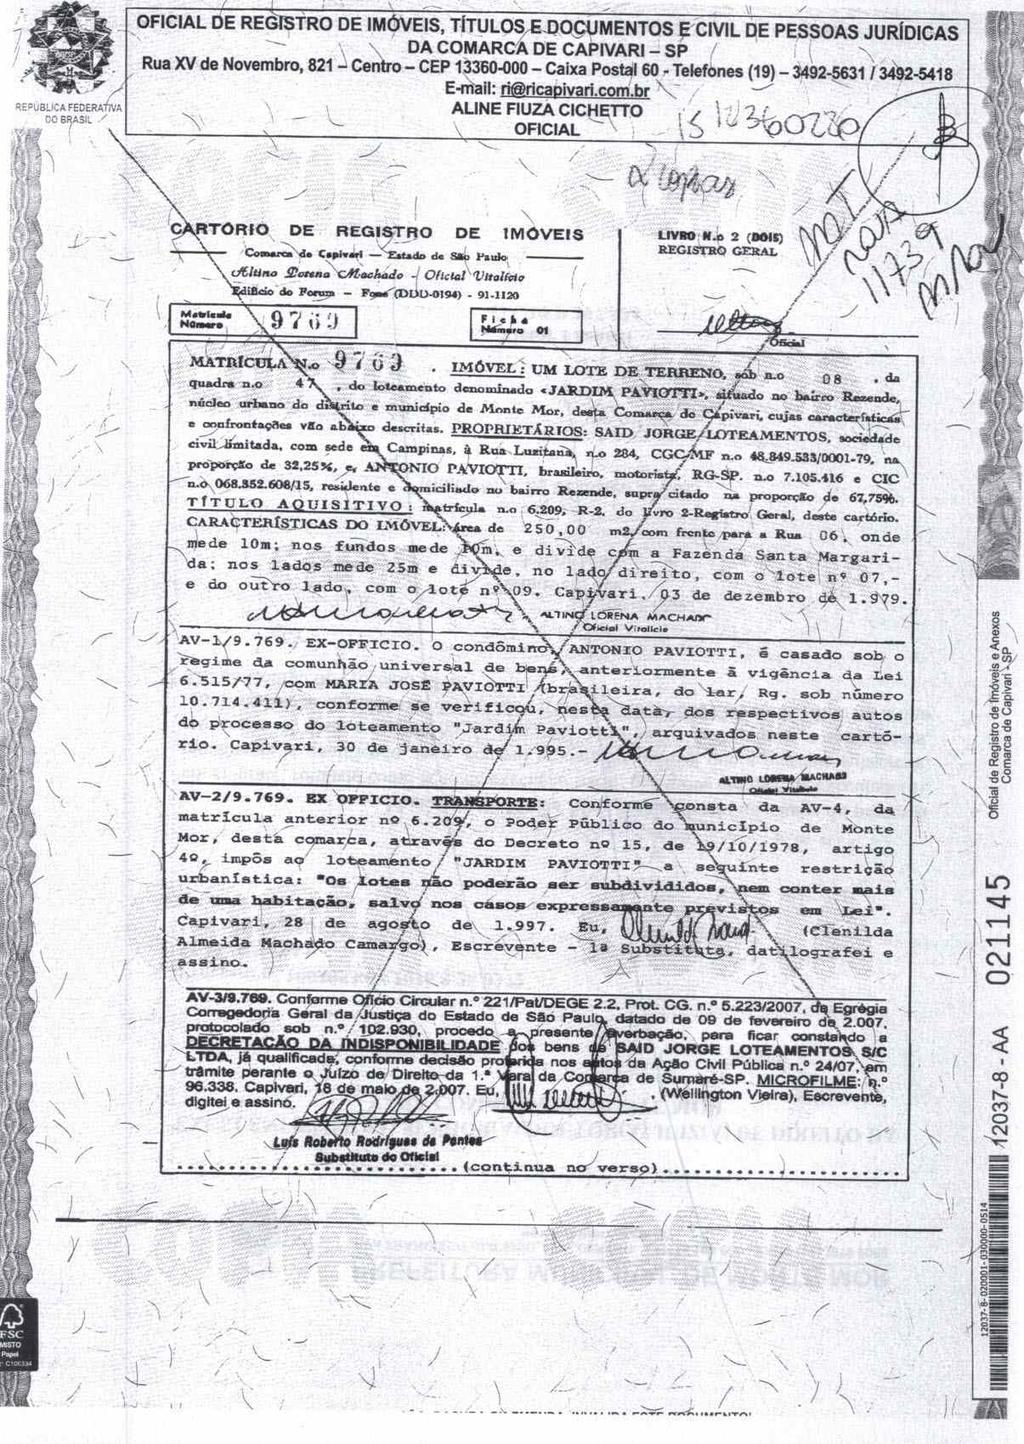 fls. 46 Este documento é cópia do original, assinado digitalmente por VICTOR FRANCHI e Tribunal de Justica do Estado de Sao Paulo, protocolado em 03/03/2017 às 08:59, sob o número